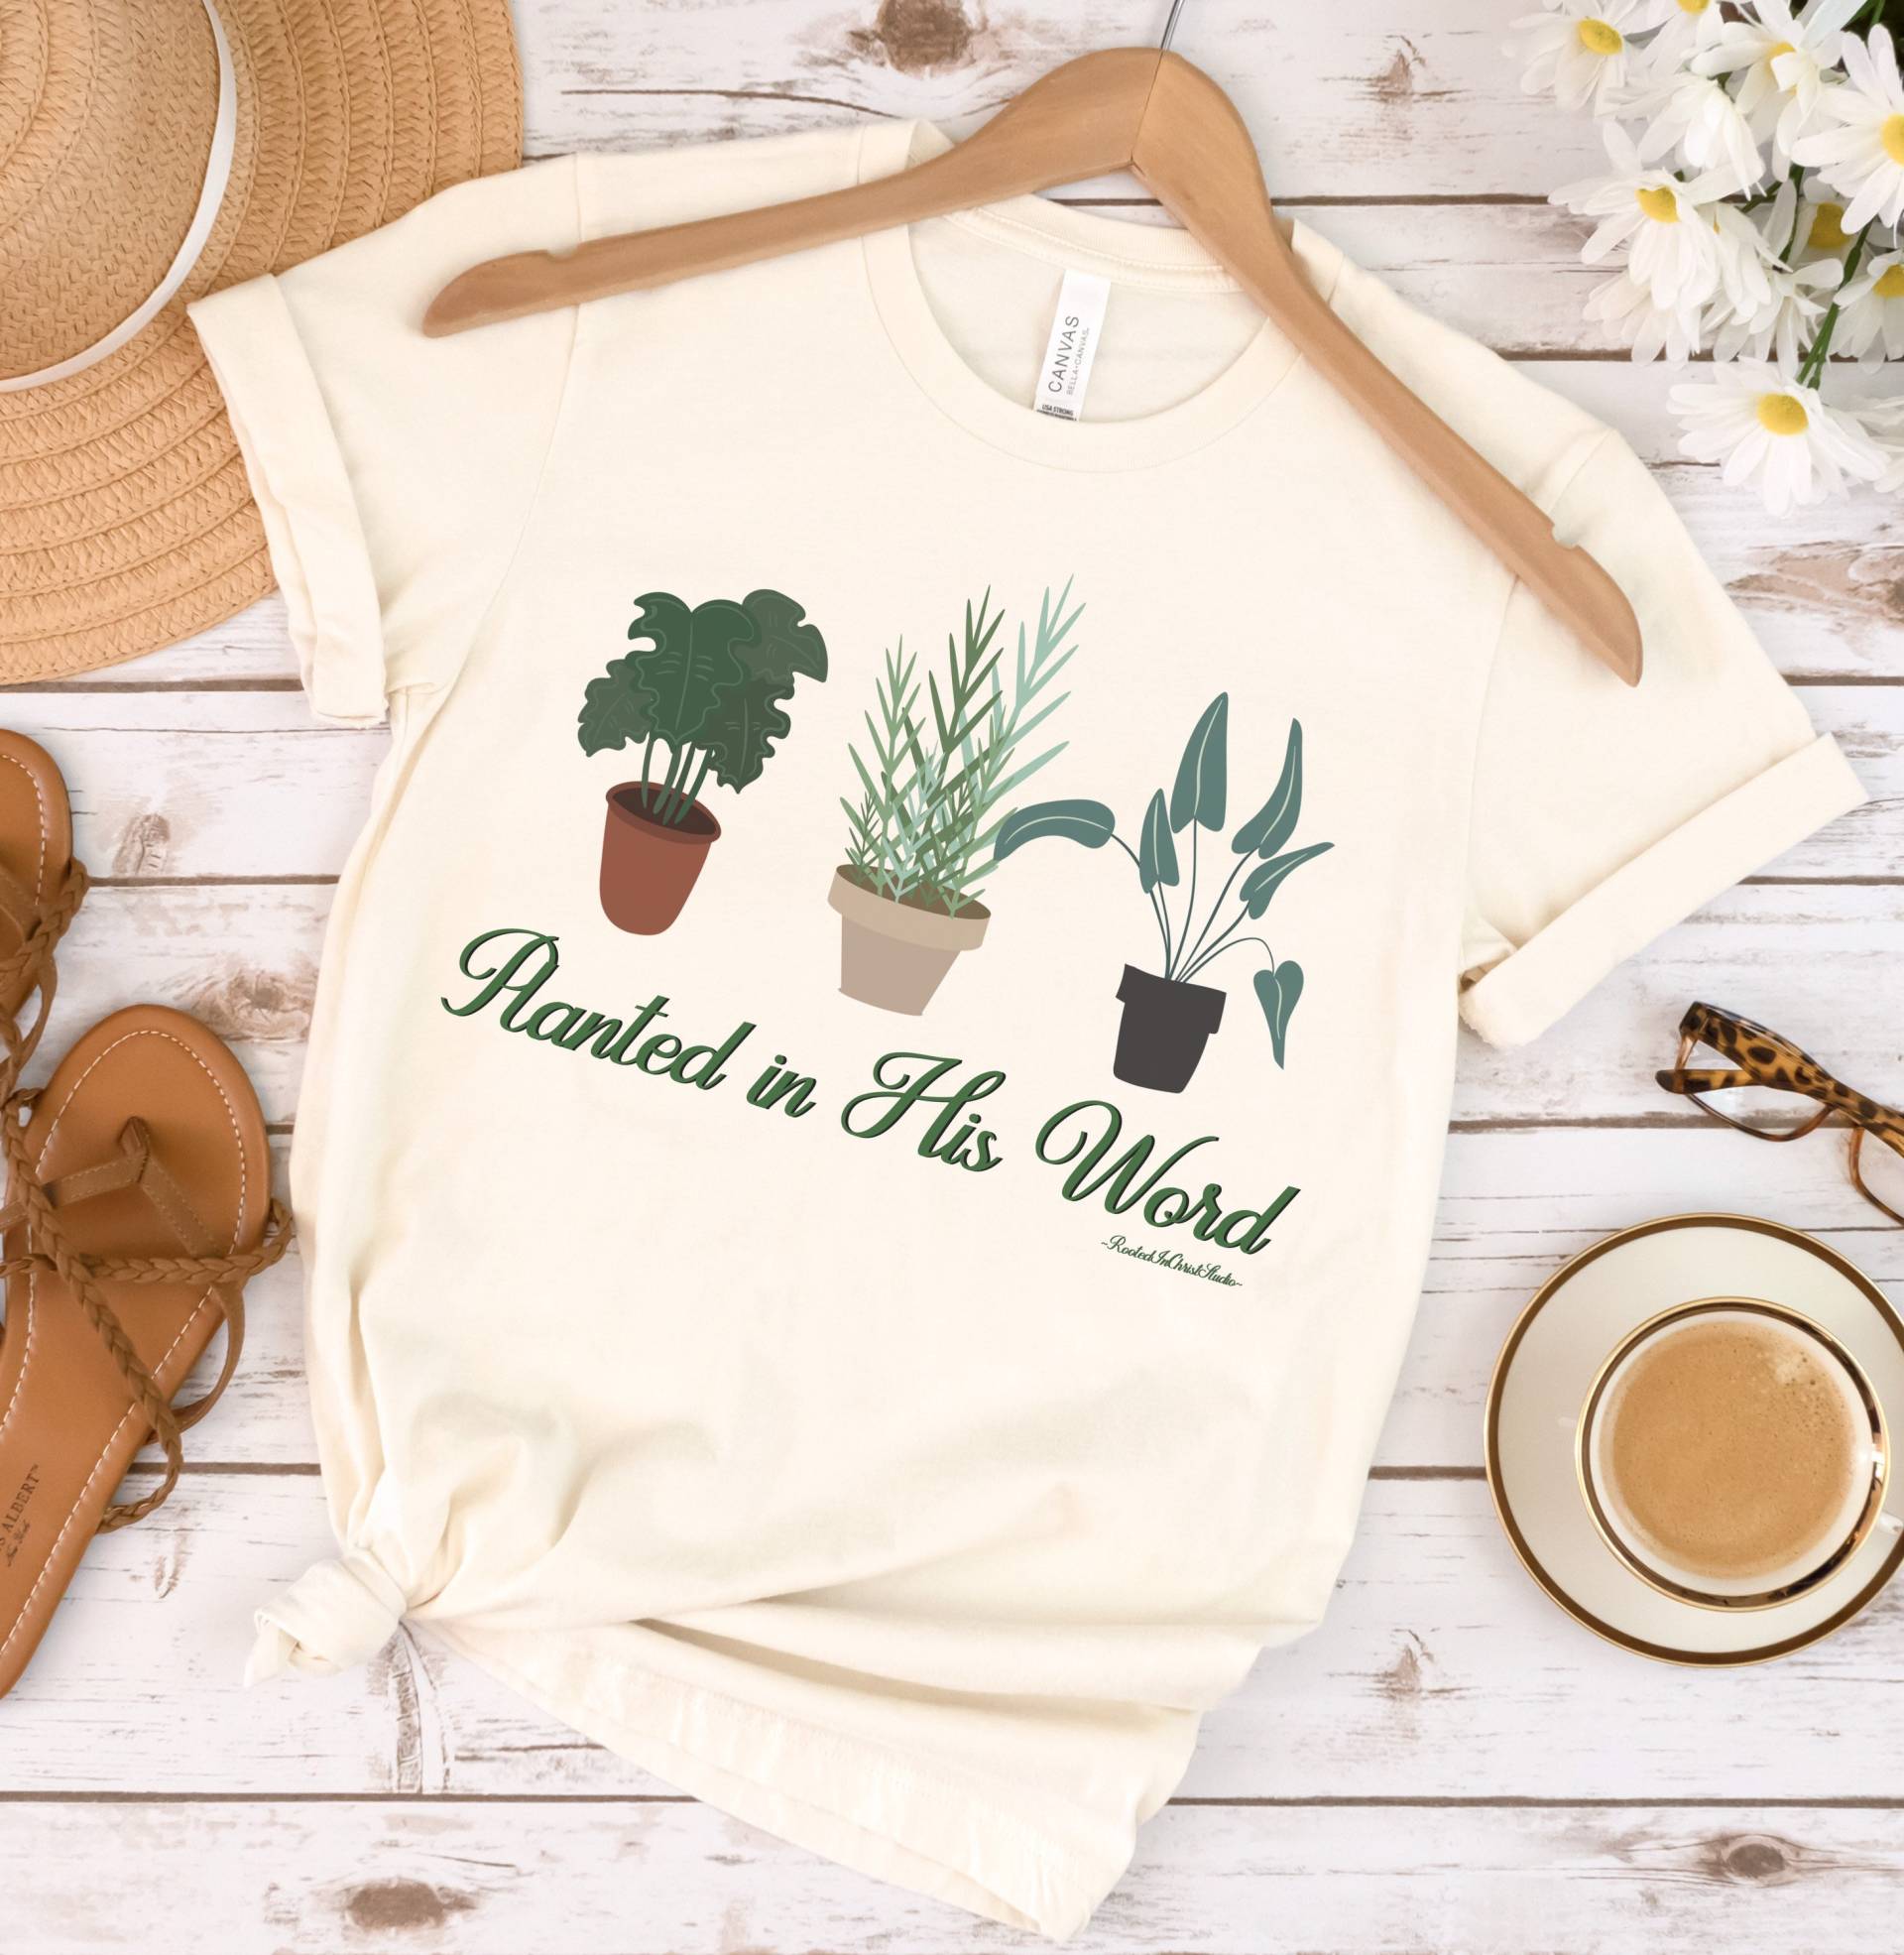 Pflanzt in Seinem Wort Kleine Pflanzen Shirt, Christliches Frauen Glaube T-Shirt, Christliche Kleidung, Gärtner Pflanzenliebe von RootedInChristStudio